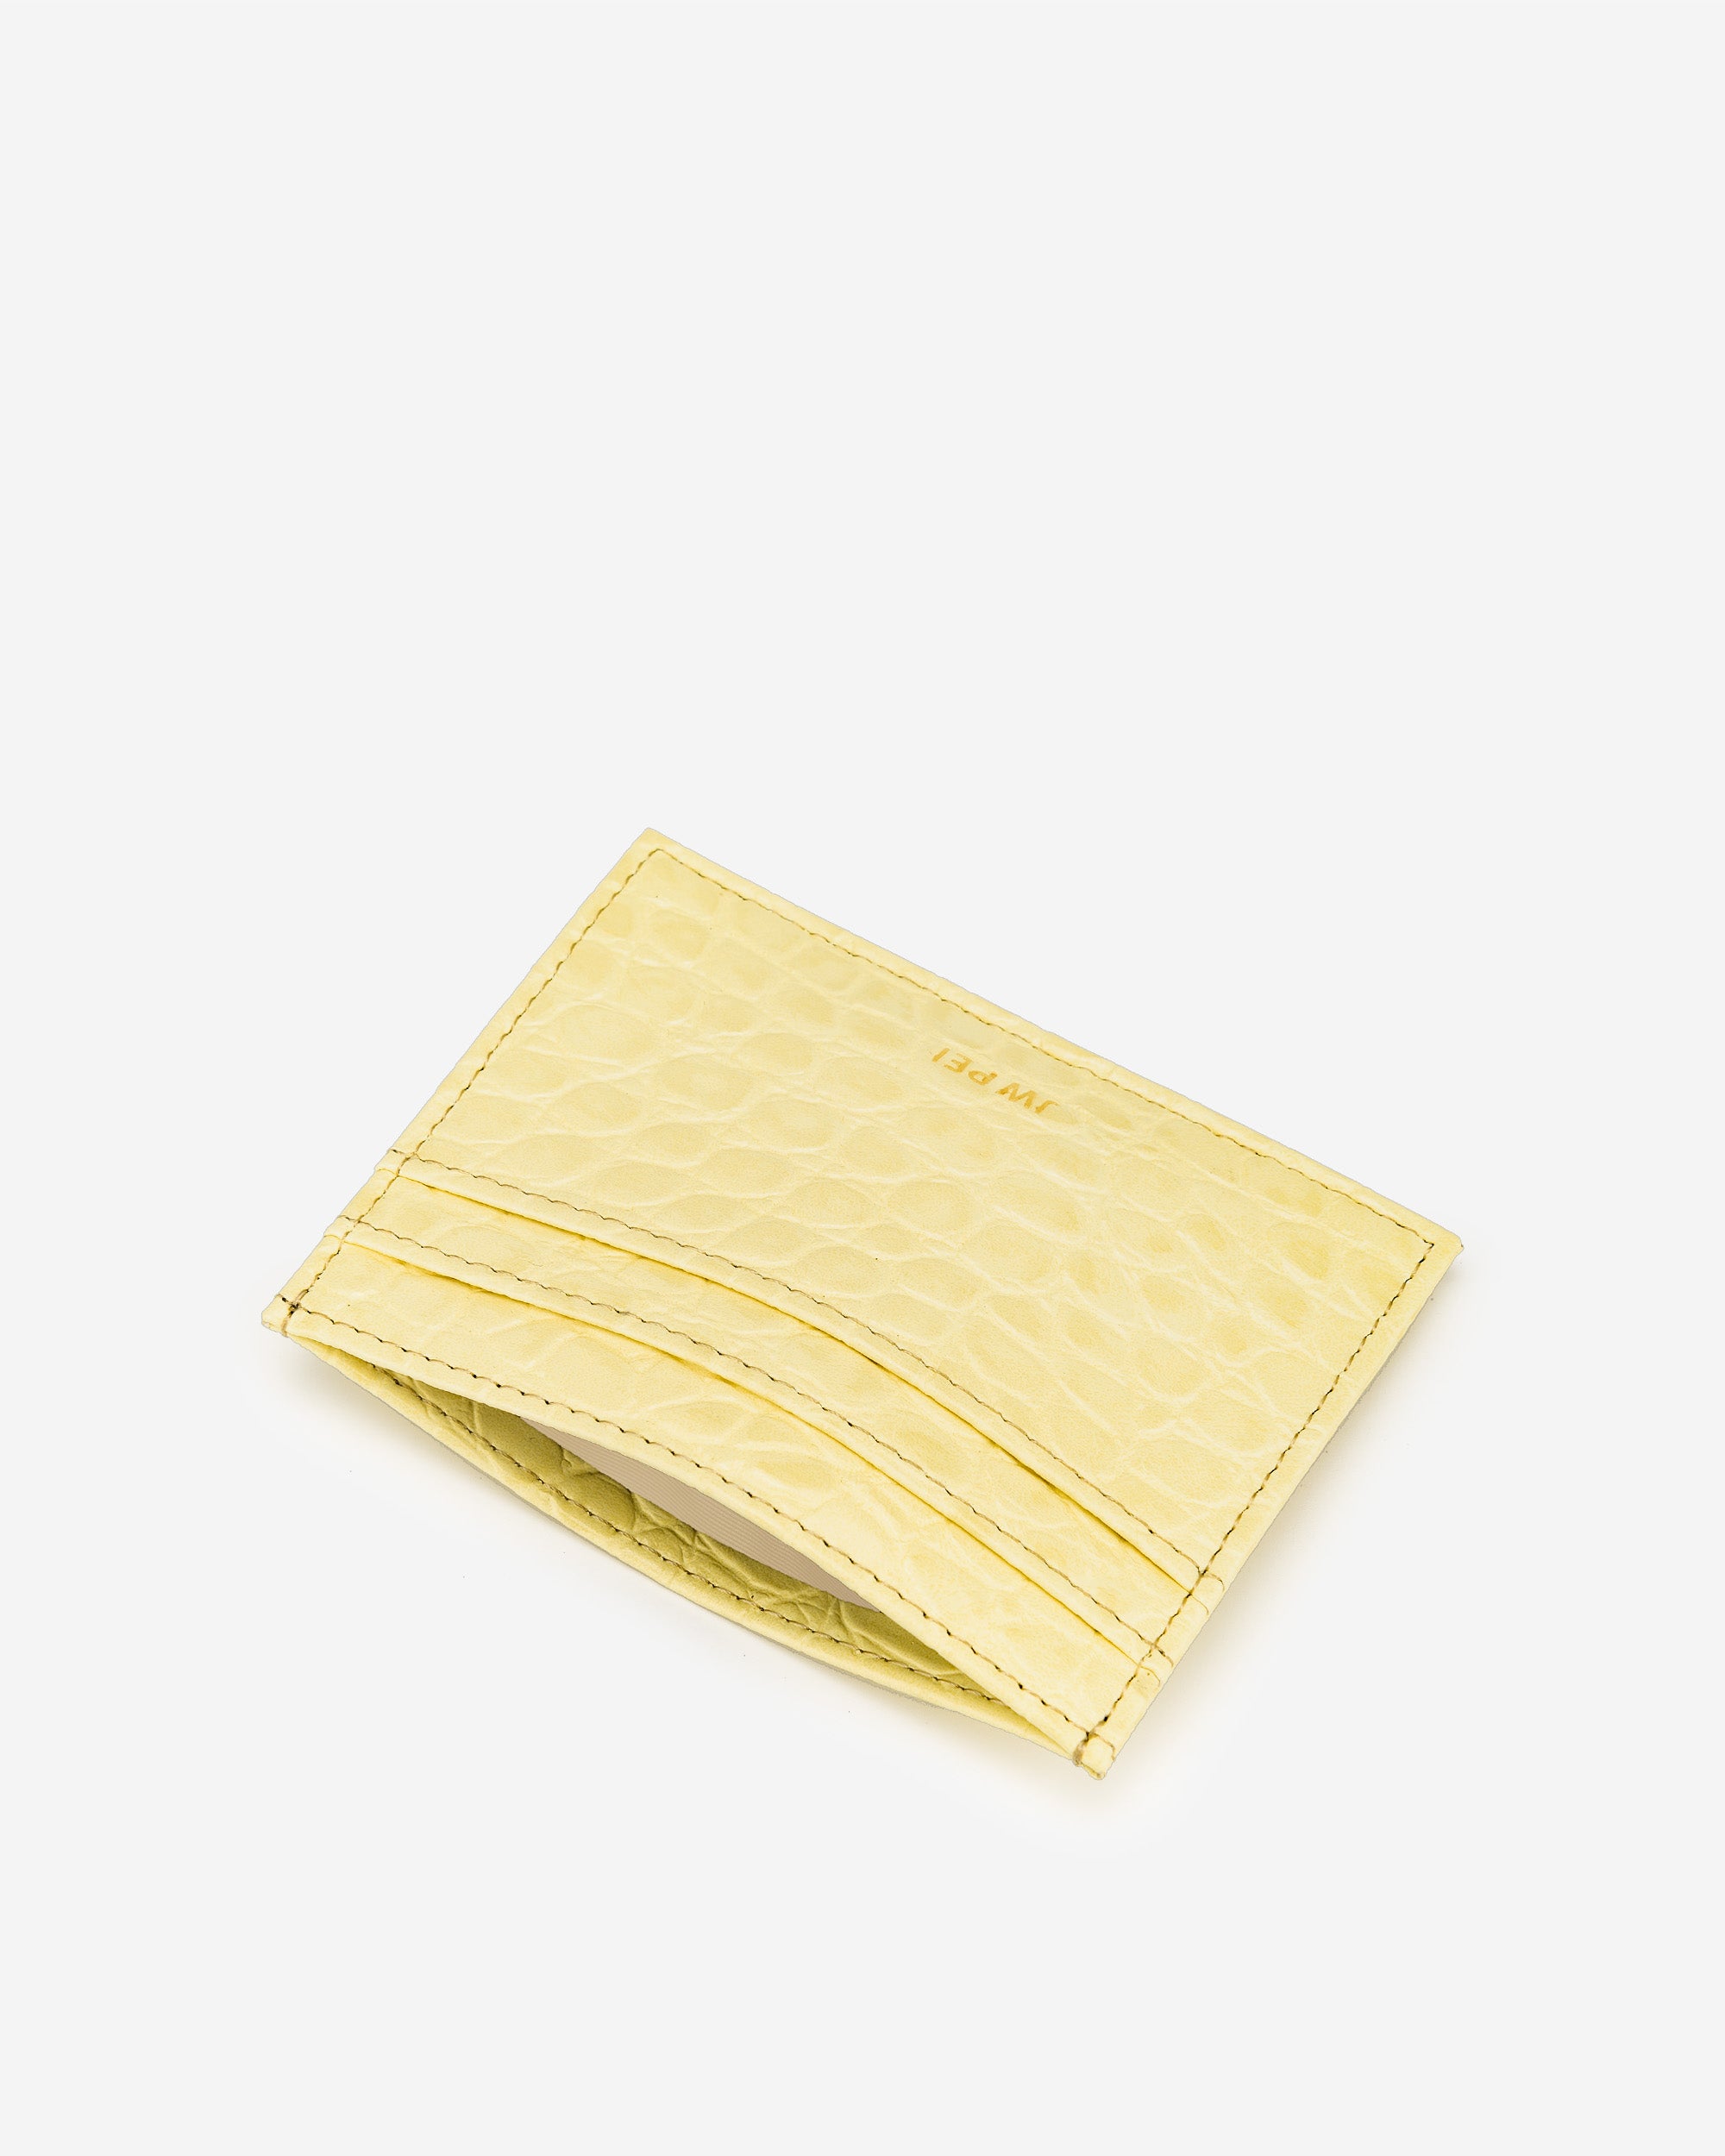 卡包 - 淺黃色鱷魚紋